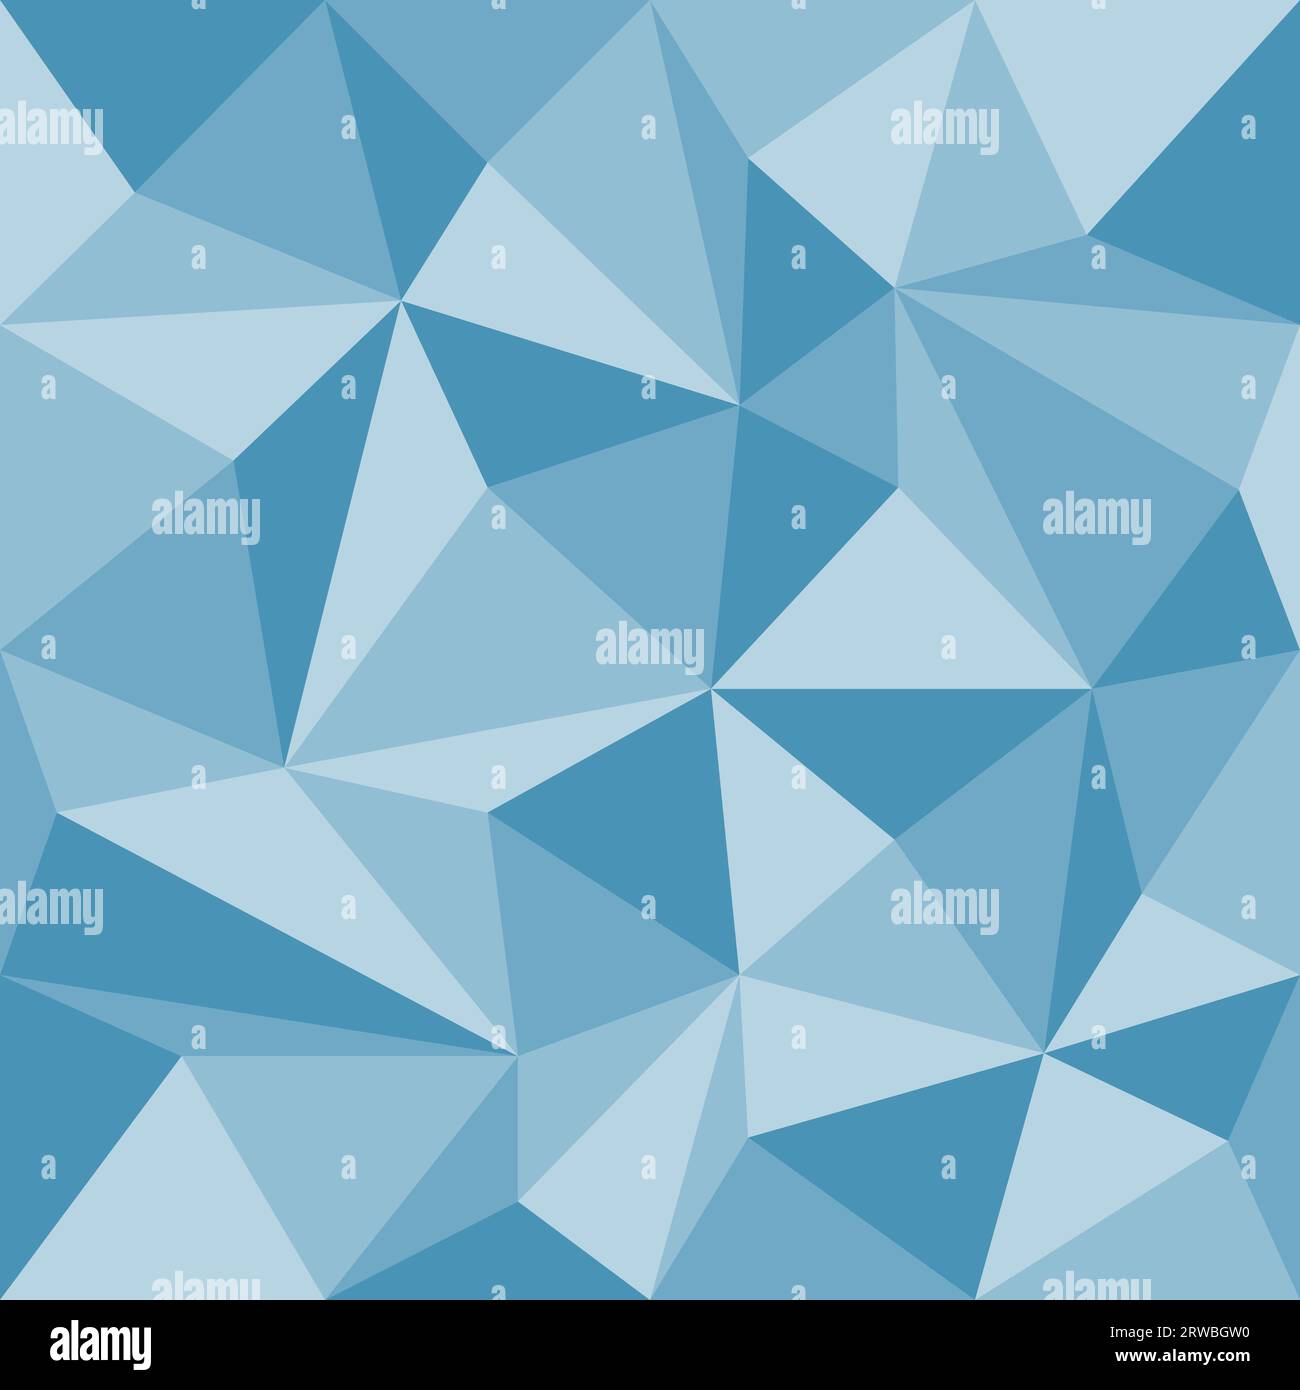 Abstraktes blaues geometrisches nahtloses Muster mit Dreiecken, Vektorillustration Stock Vektor